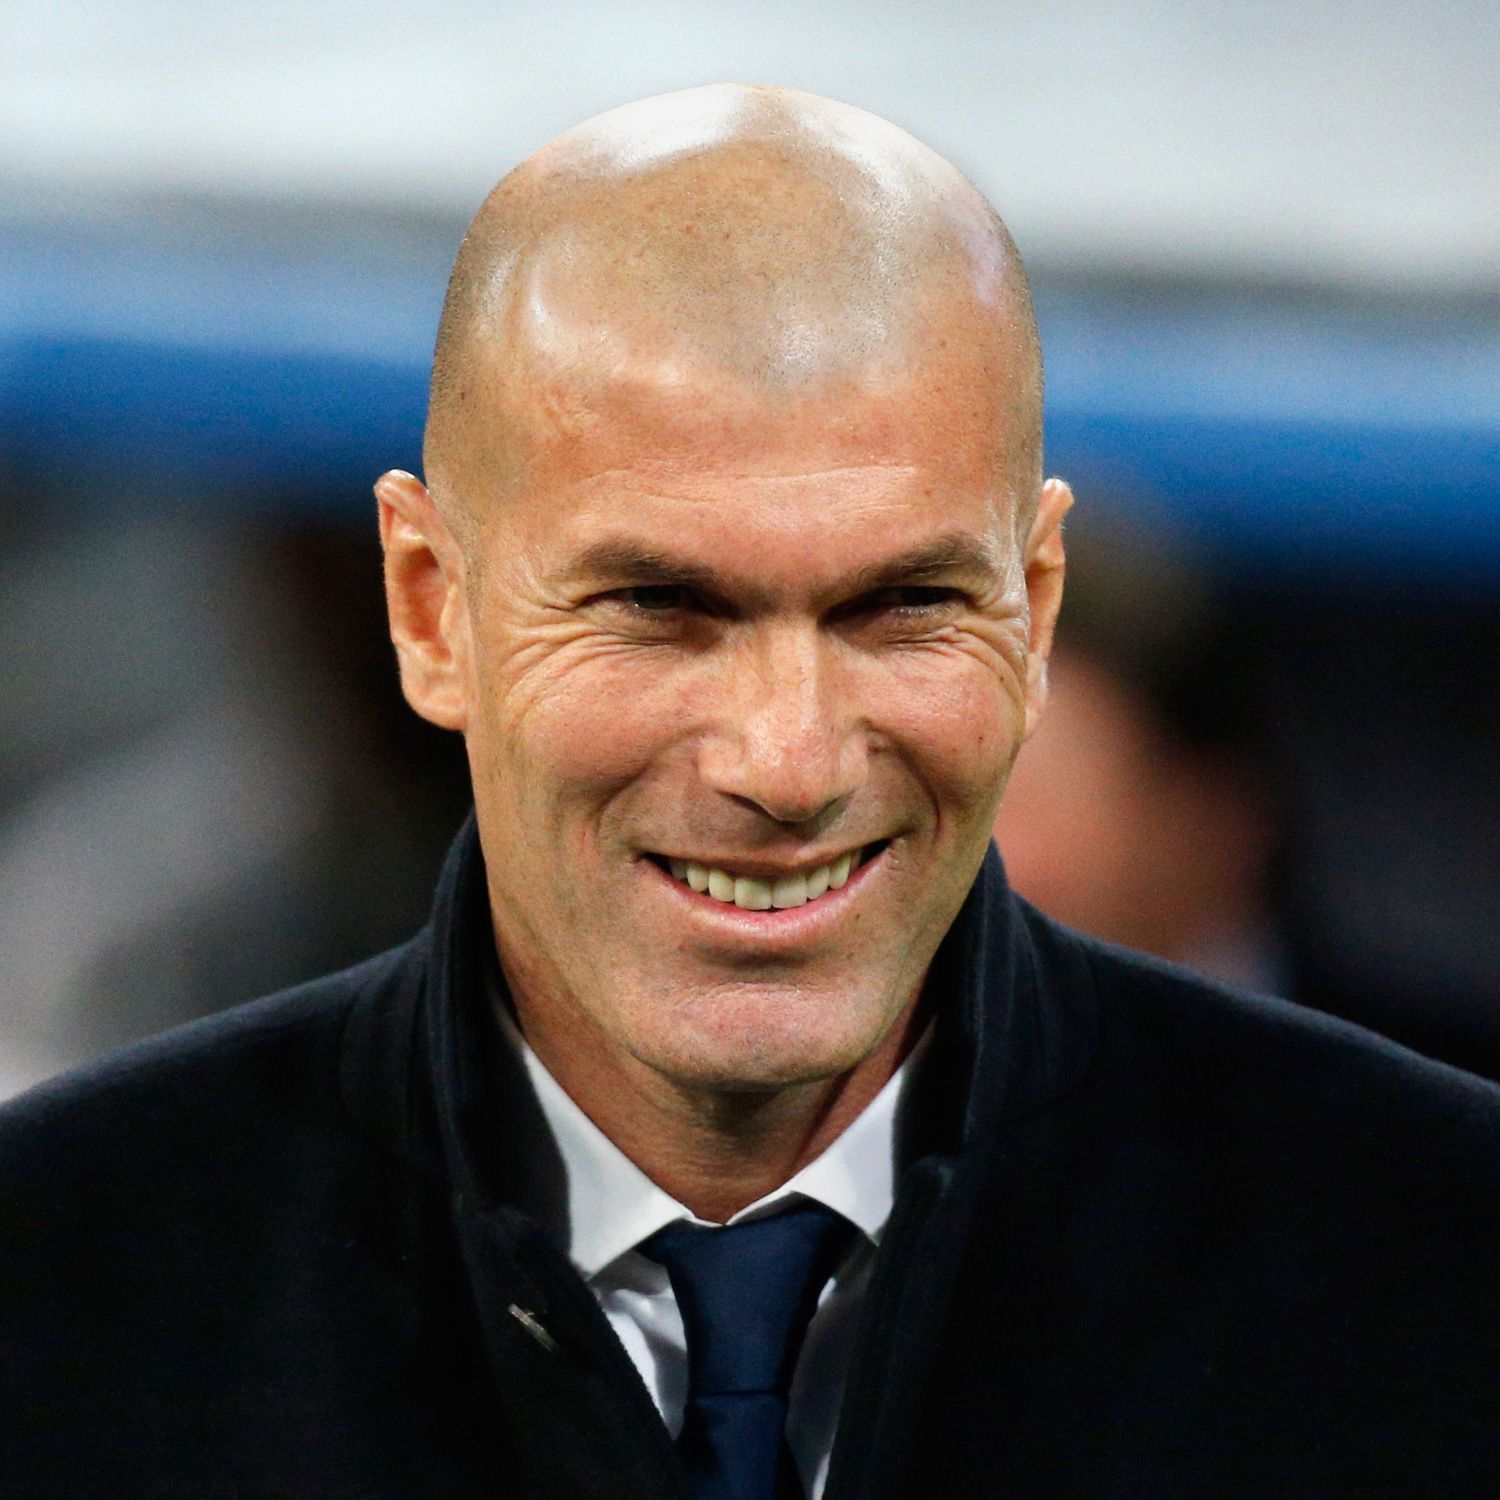 EdF : Zidane futur sélectionneur des Bleus ? La réponse classe de Deschamps